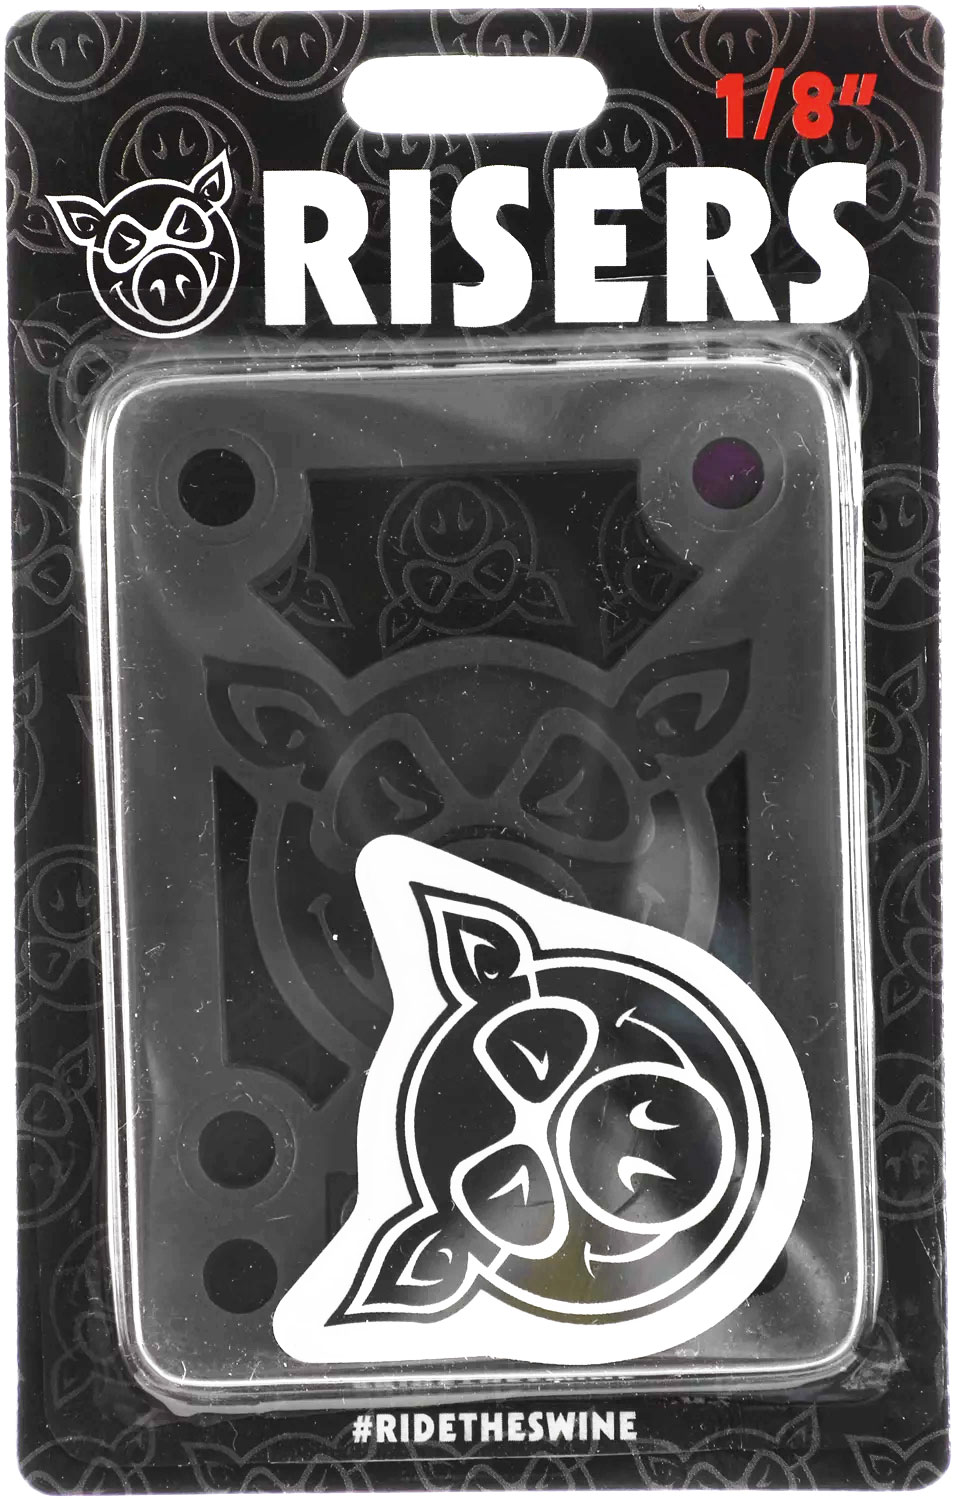 ライザーパッドPIG PILES 1/8 HARD RISER (BLACK 1/8 )スケートボード 車高調整PIG(ピッグ) k935-bk